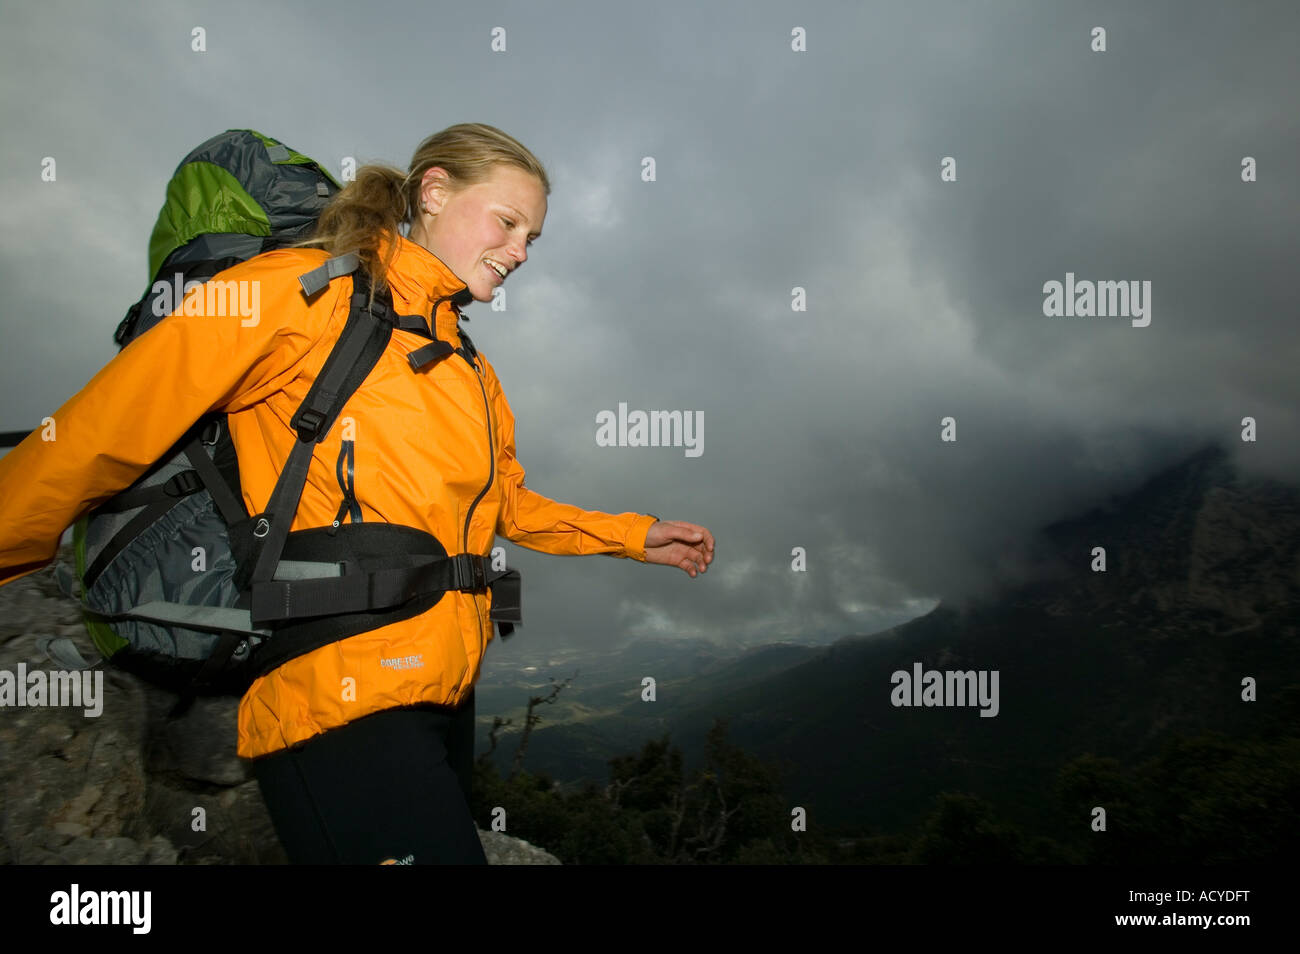 Mochilero femenino en las altas montañas con proximidad de tormentas Foto de stock